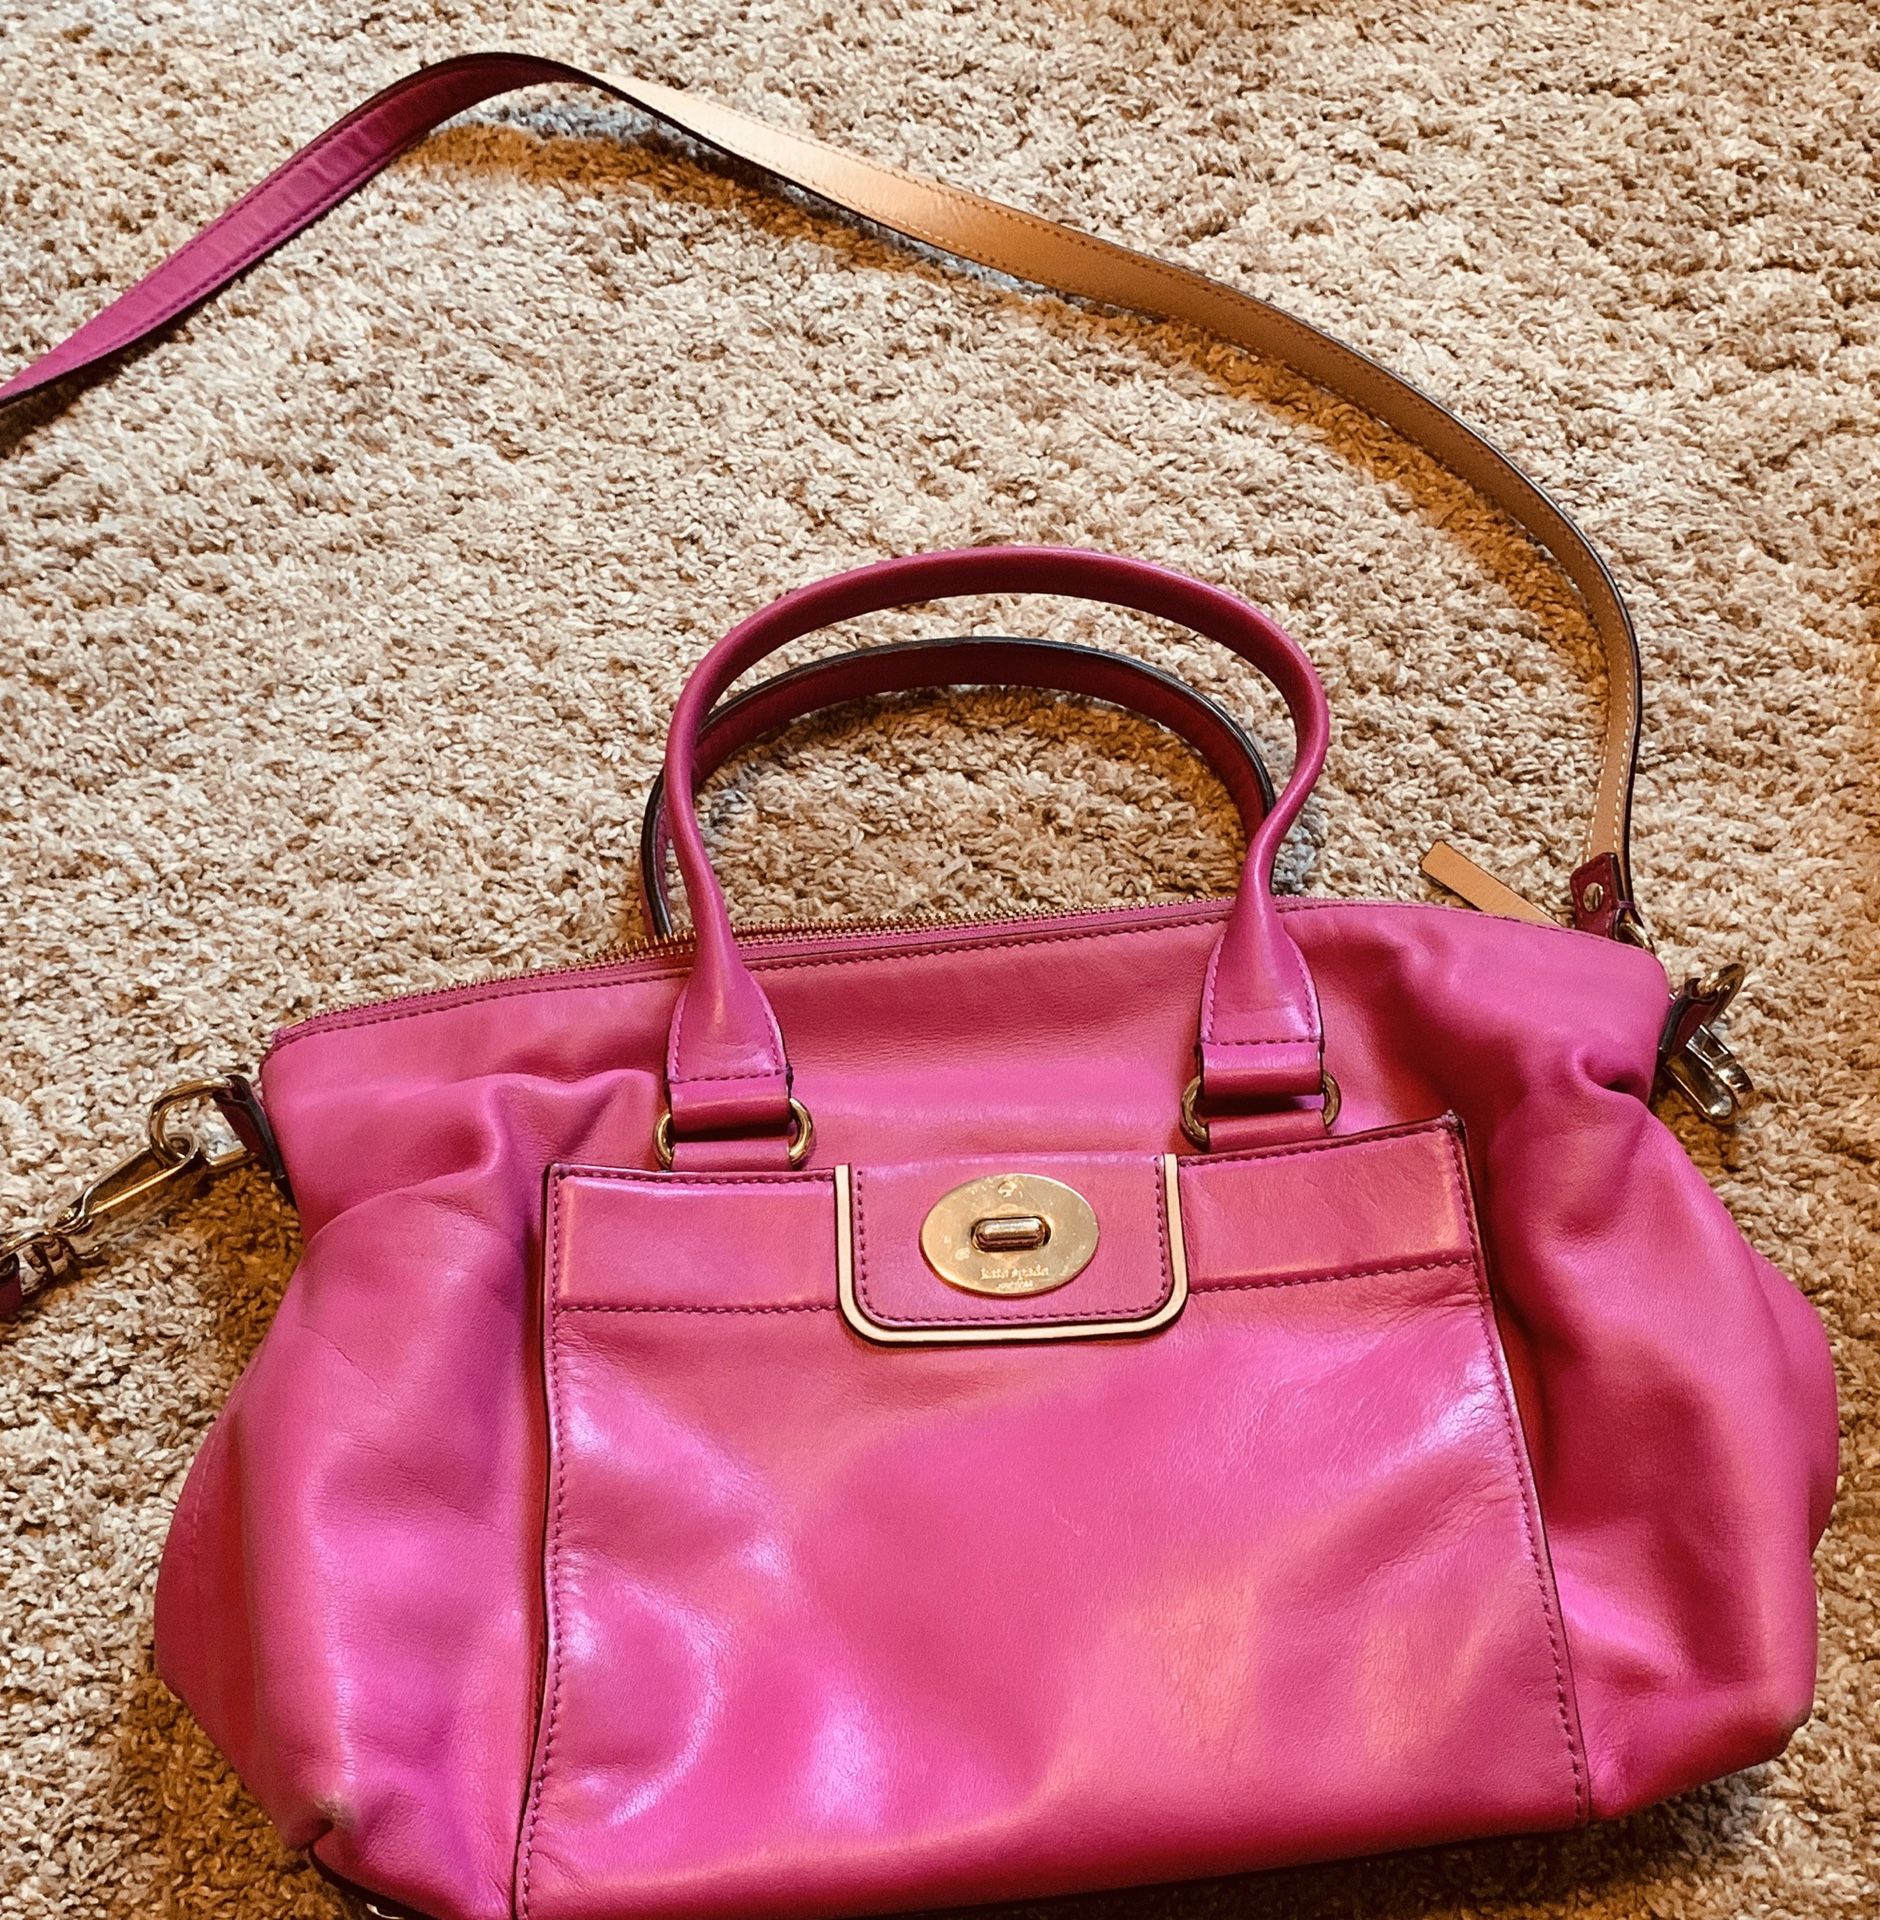 Kate spade pink purse